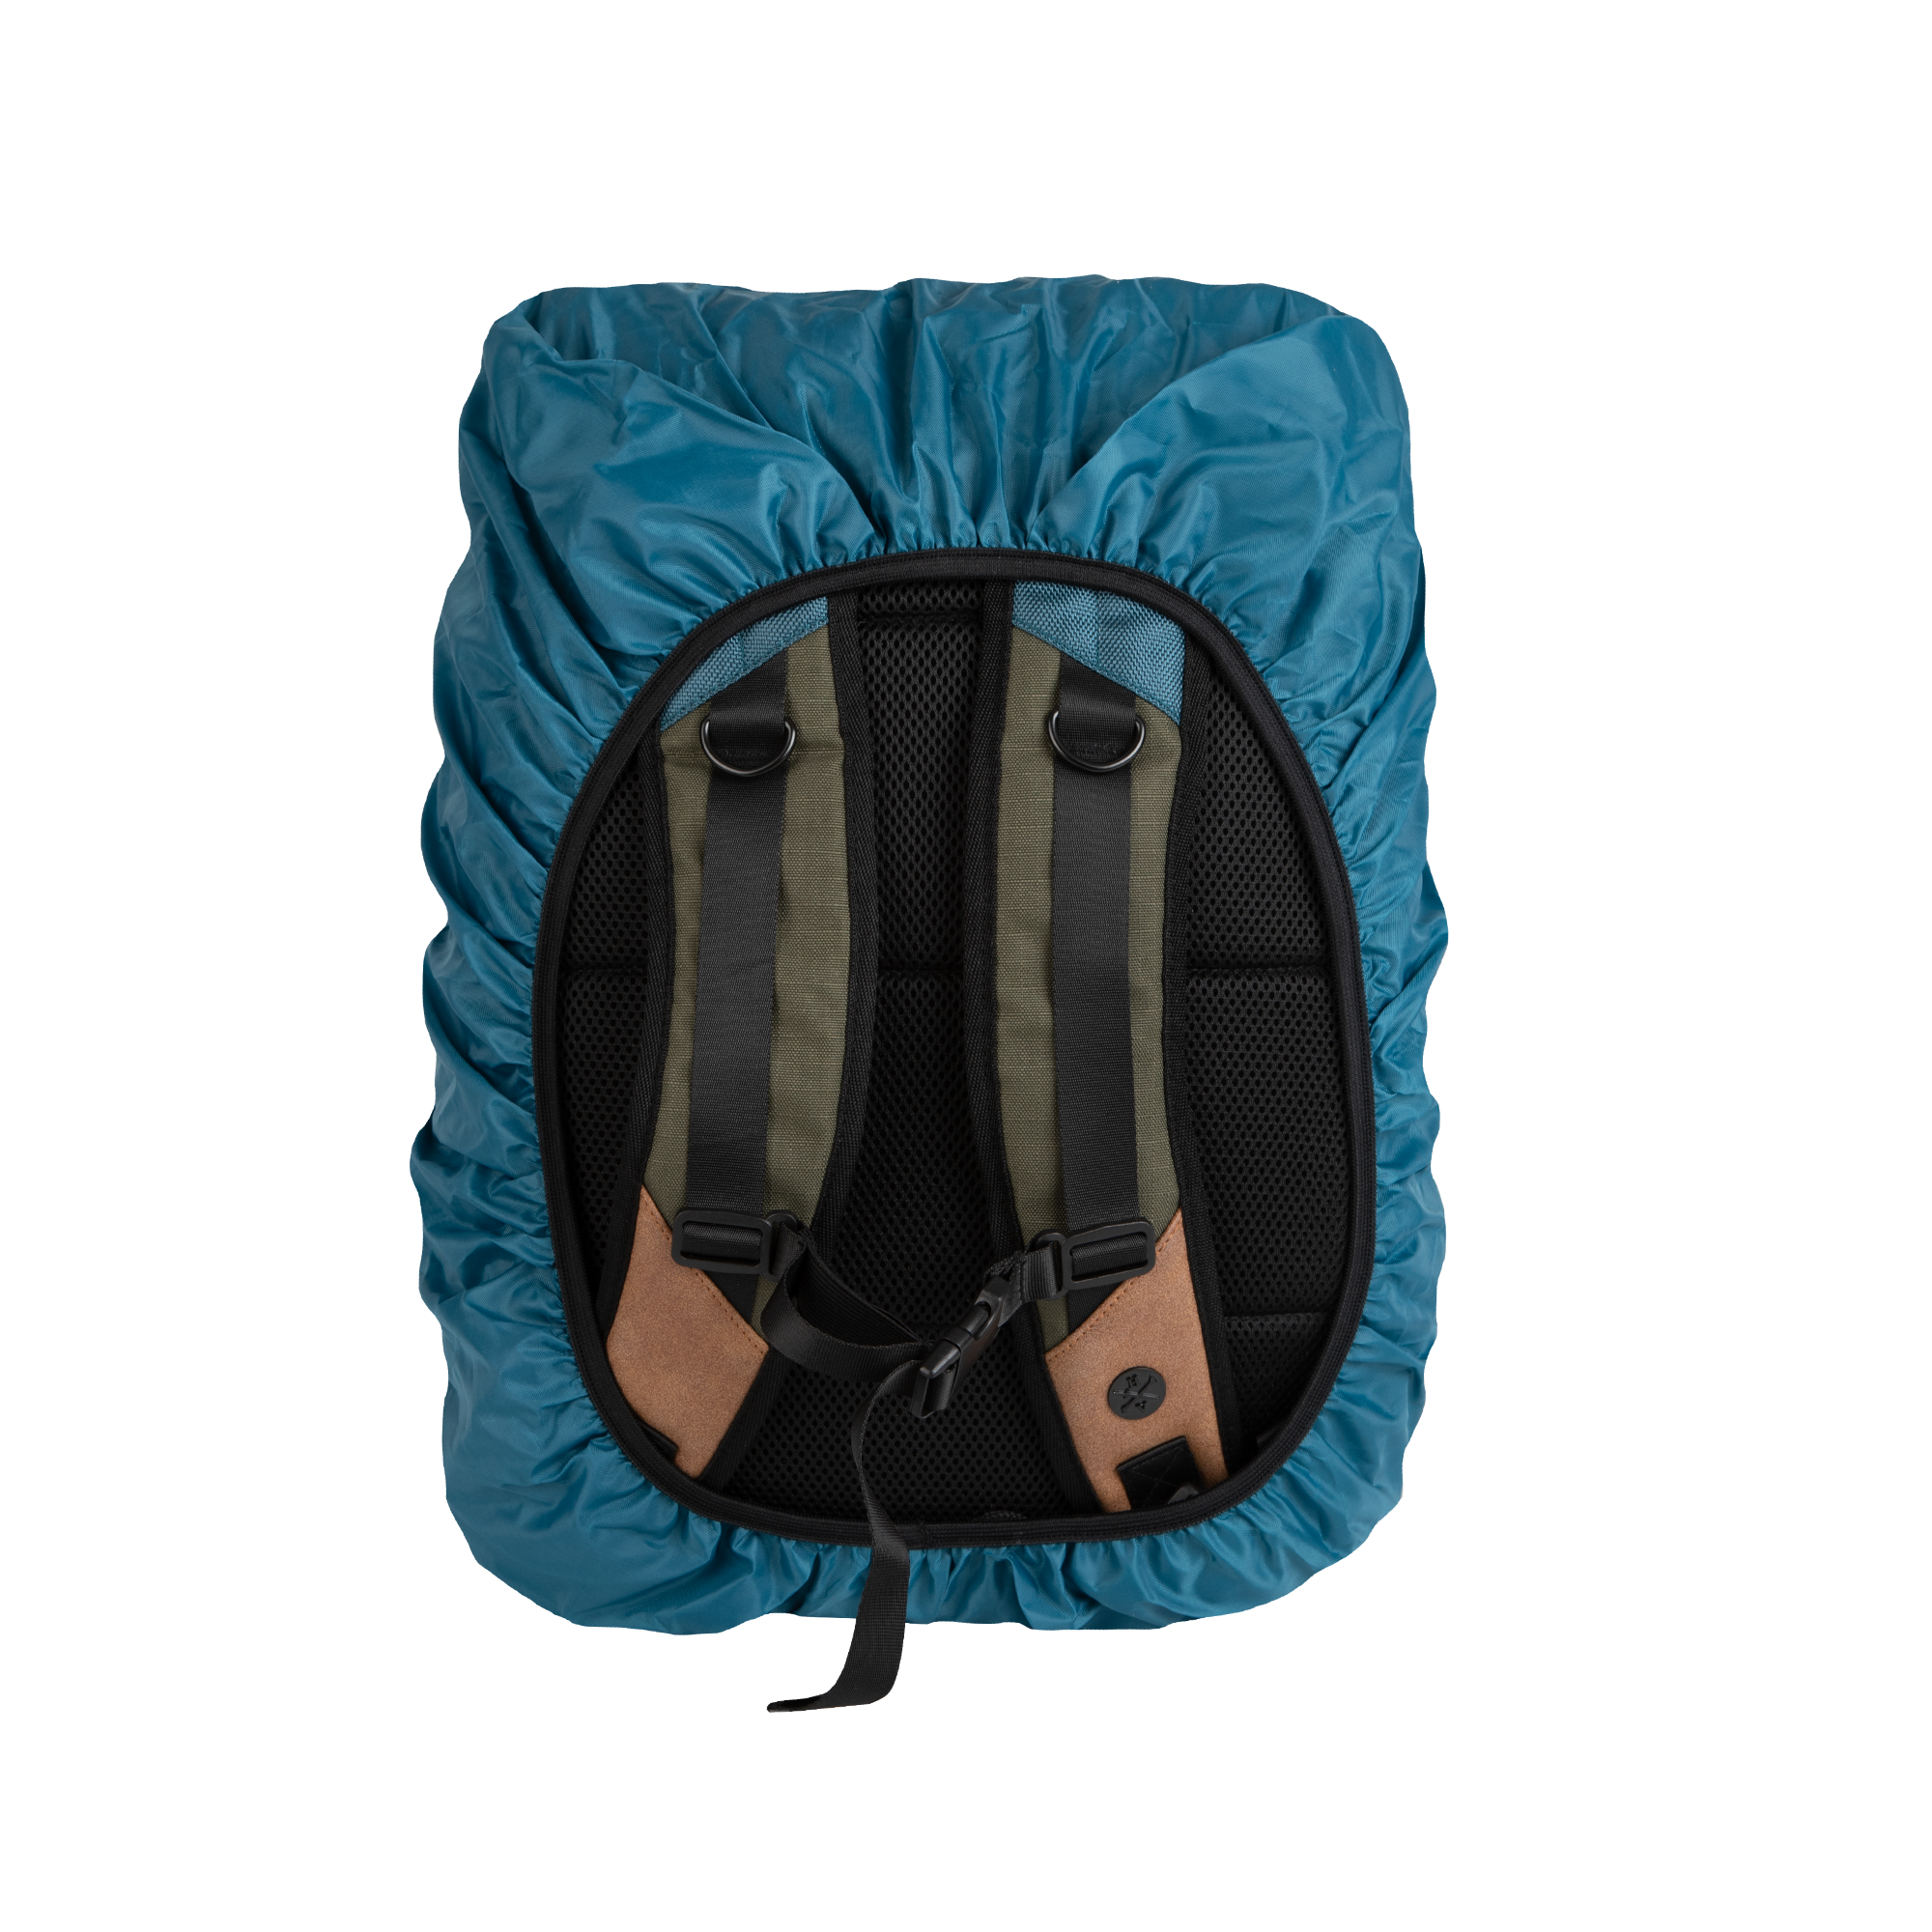 Rebel Scum Infantry Backpack